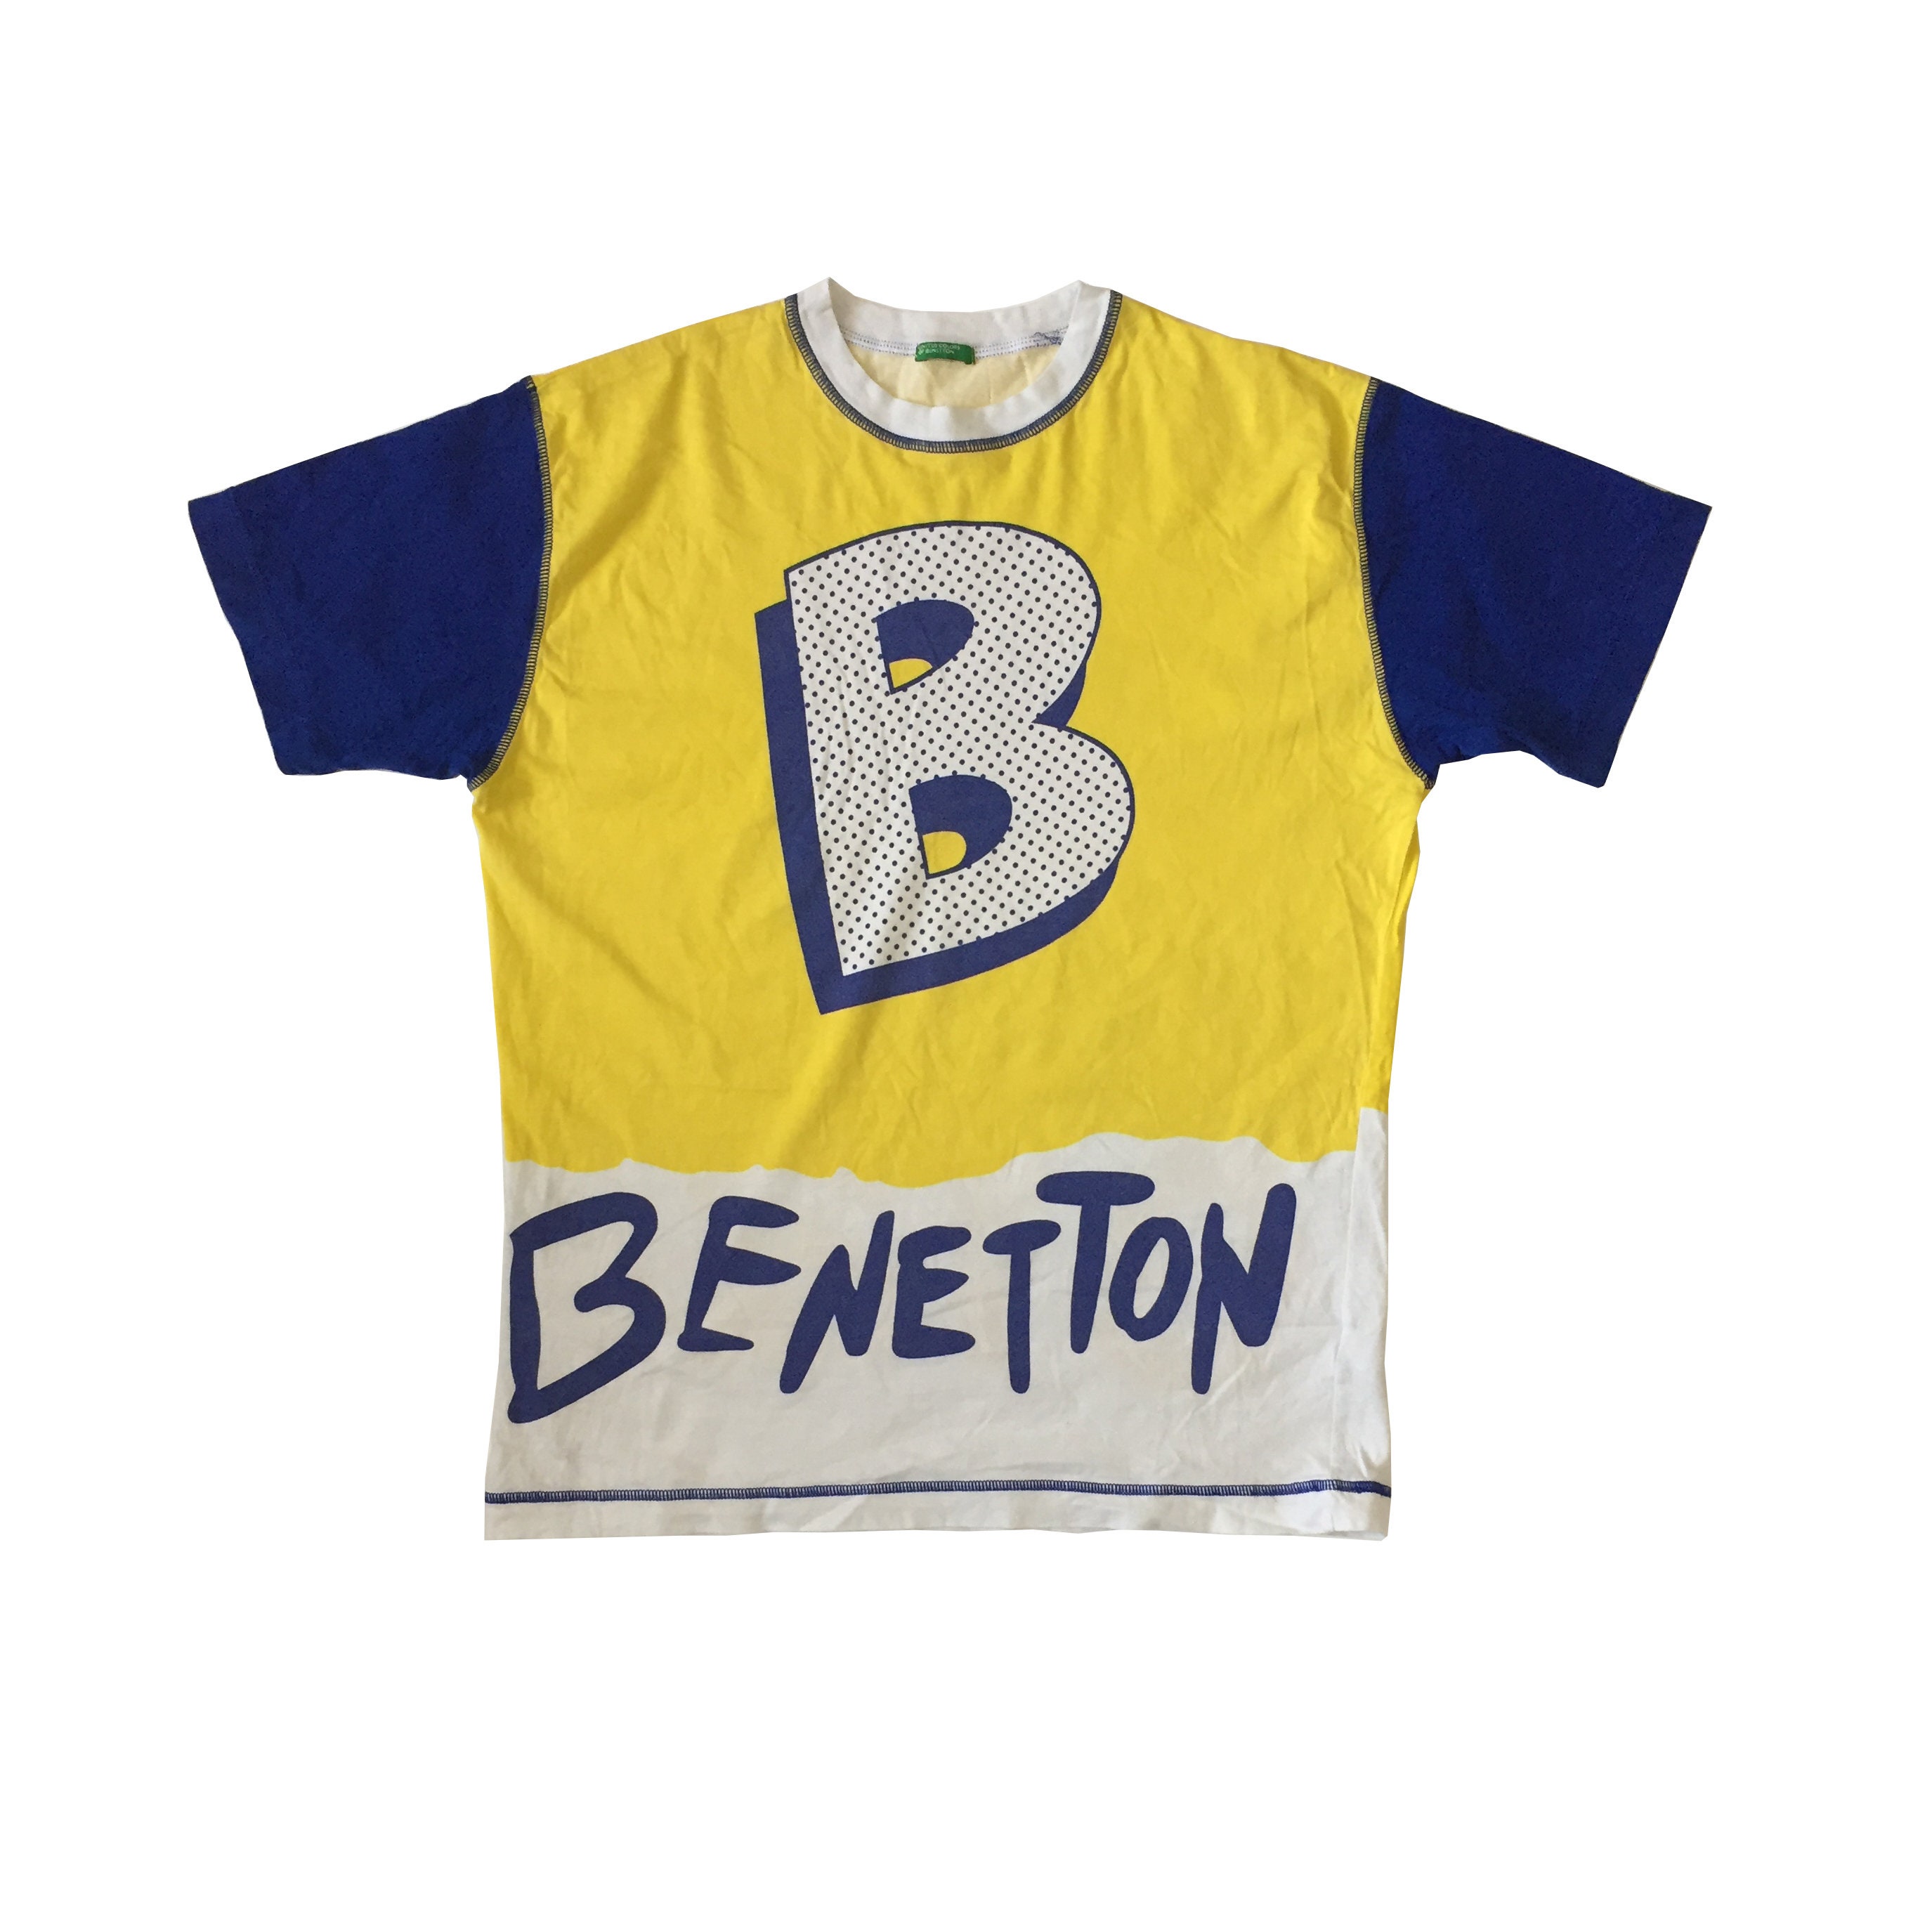 【イタリア製】80s 90s BENETTON ロゴ刺繍 tシャツ ヴィンテージ